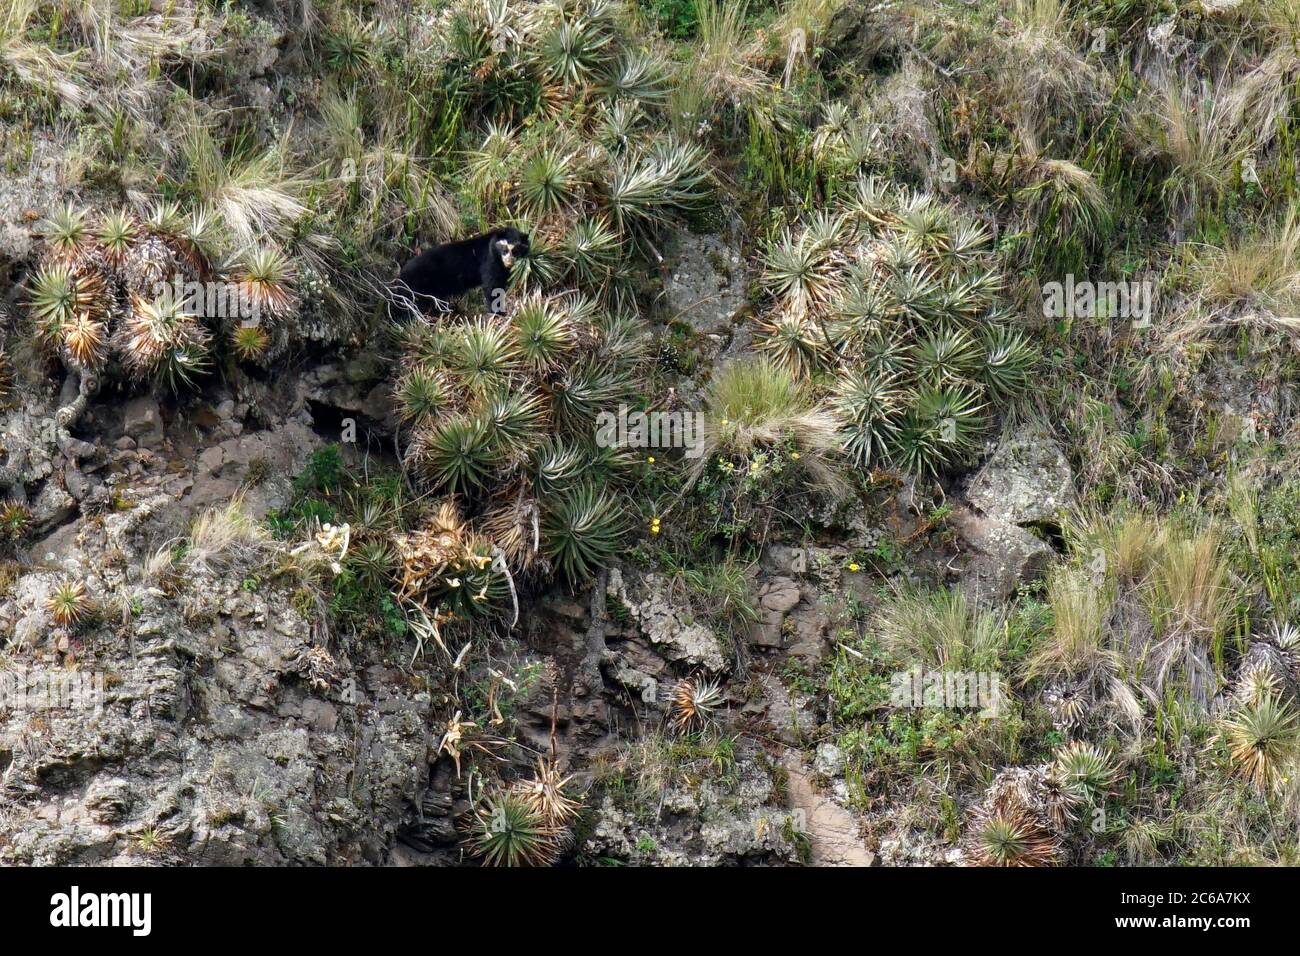 Oso de anteojos (Tremarctos ornatus), también conocido como oso andino o oso andino de cara corta, en las tierras altas del Ecuador. Localmente como jukumari (aymara), Foto de stock